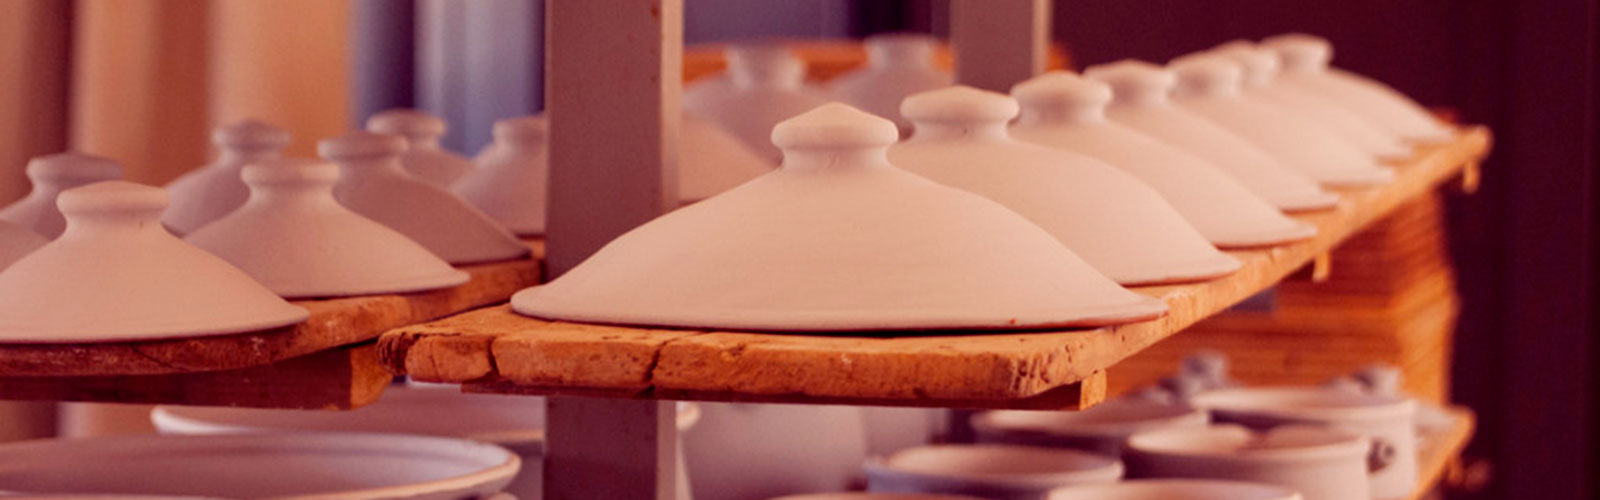 Ceramics prepared for the oven